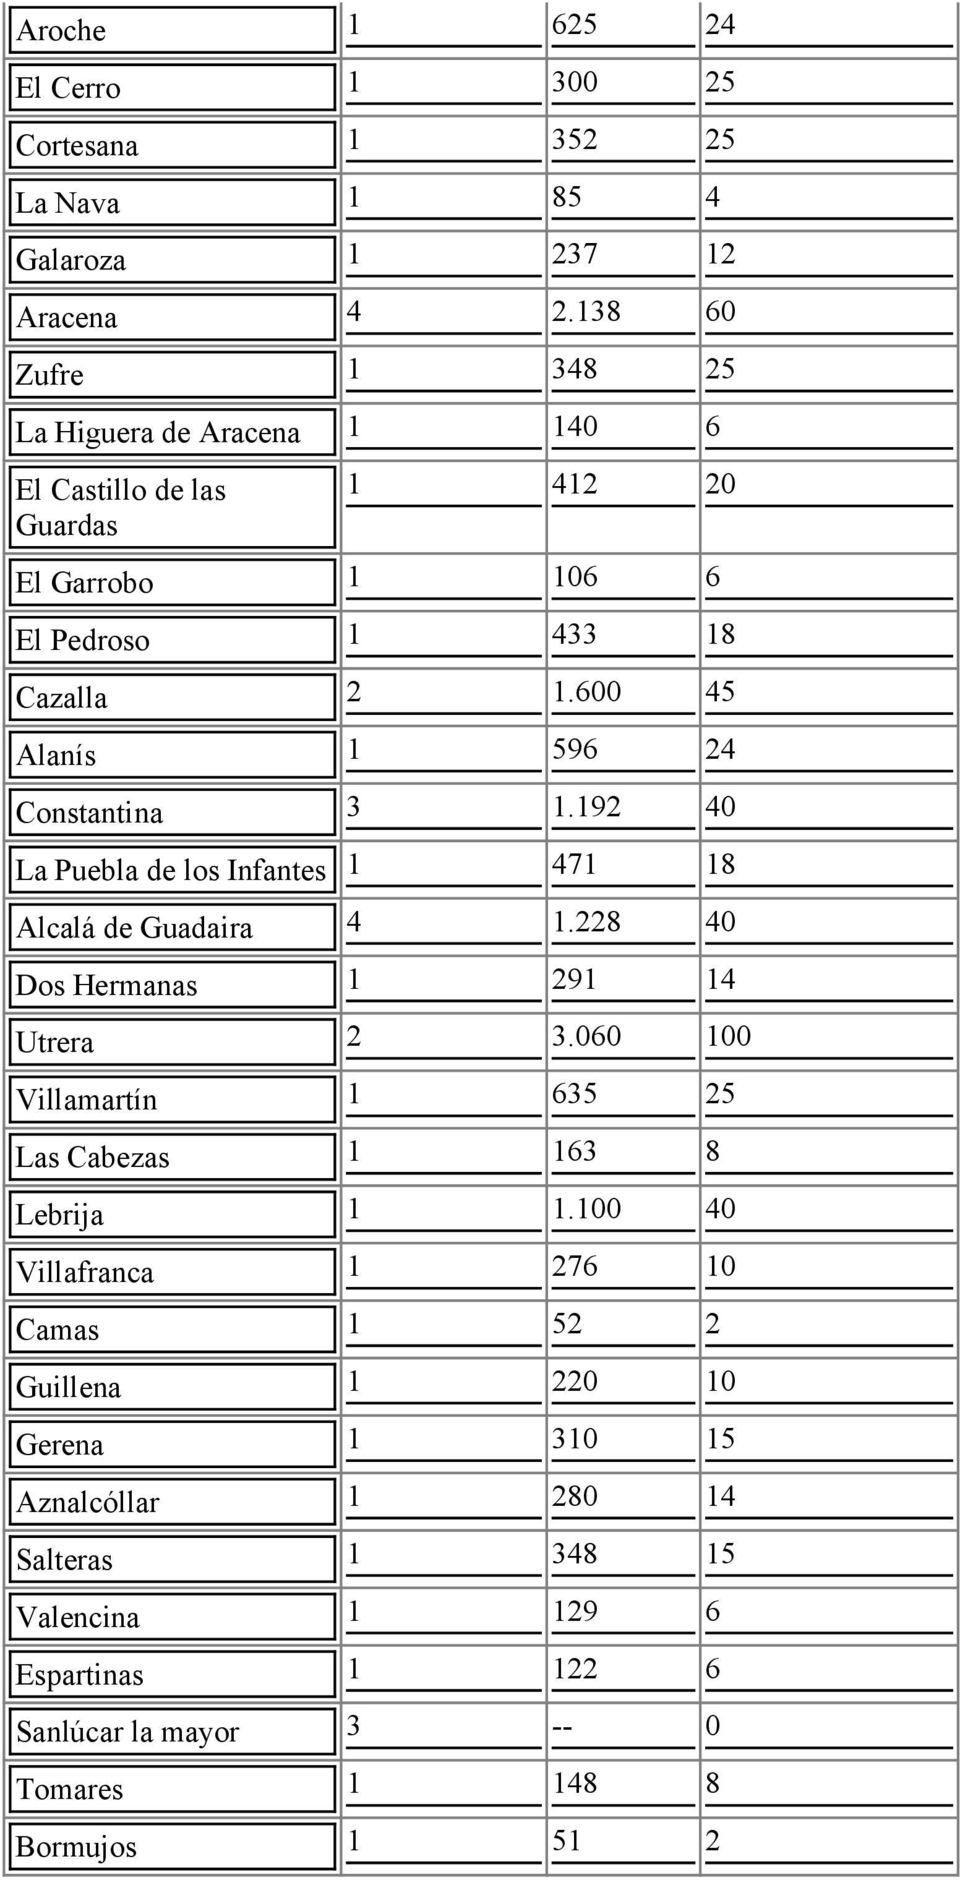 600 45 Alanís 1 596 24 Constantina 3 1.192 40 La Puebla de los Infantes 1 471 18 Alcalá de Guadaira 4 1.228 40 Dos Hermanas 1 291 14 Utrera 2 3.